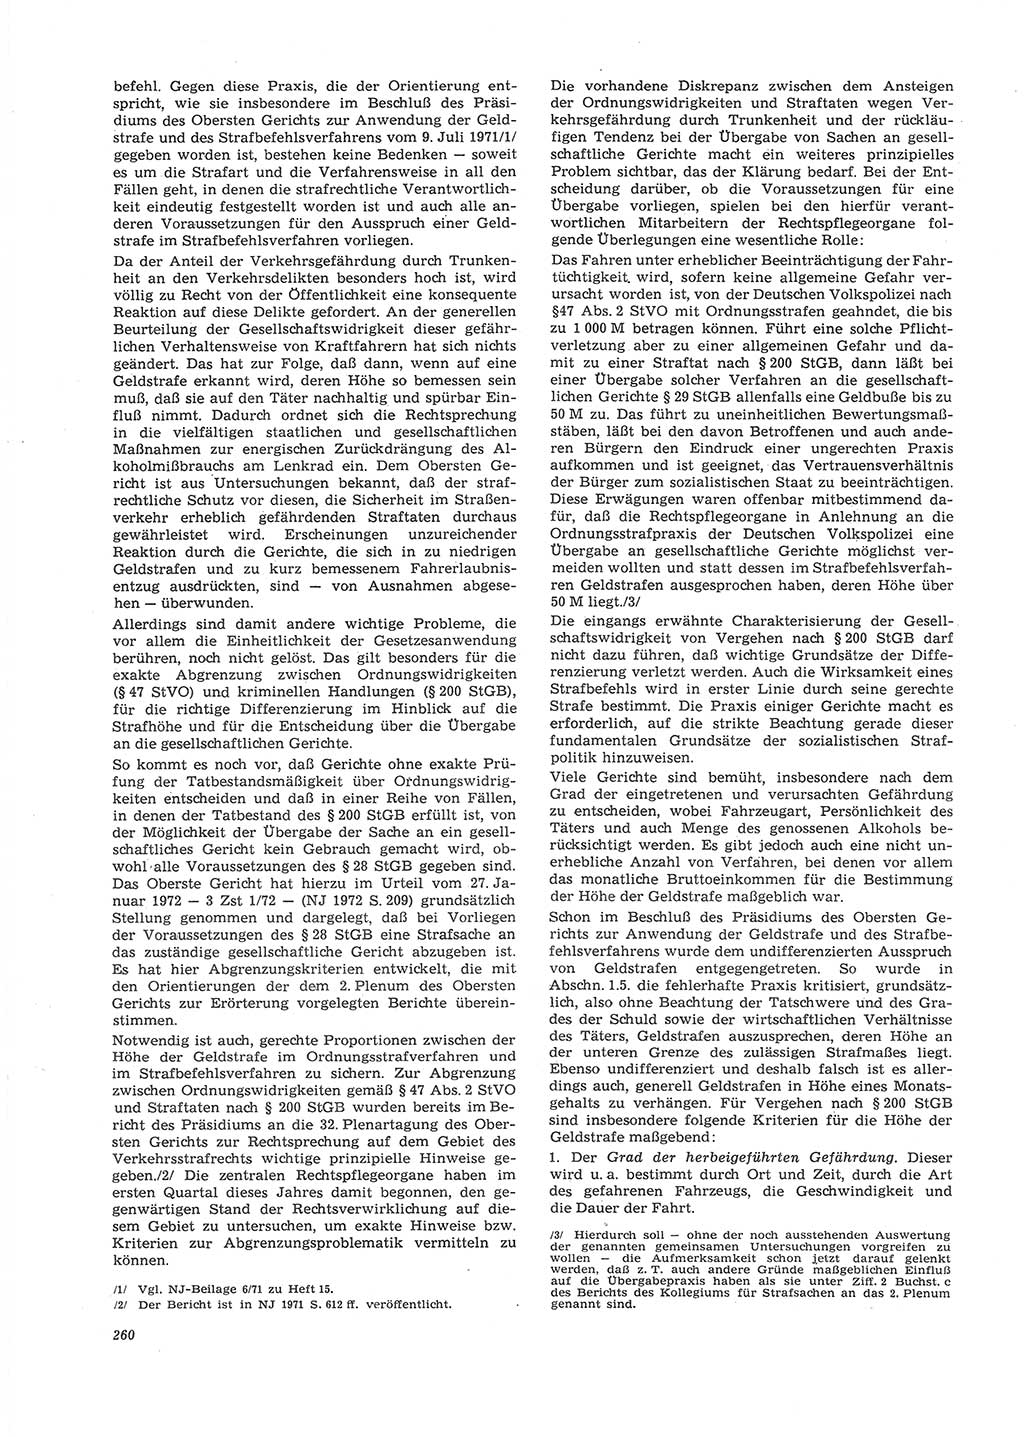 Neue Justiz (NJ), Zeitschrift für Recht und Rechtswissenschaft [Deutsche Demokratische Republik (DDR)], 26. Jahrgang 1972, Seite 260 (NJ DDR 1972, S. 260)